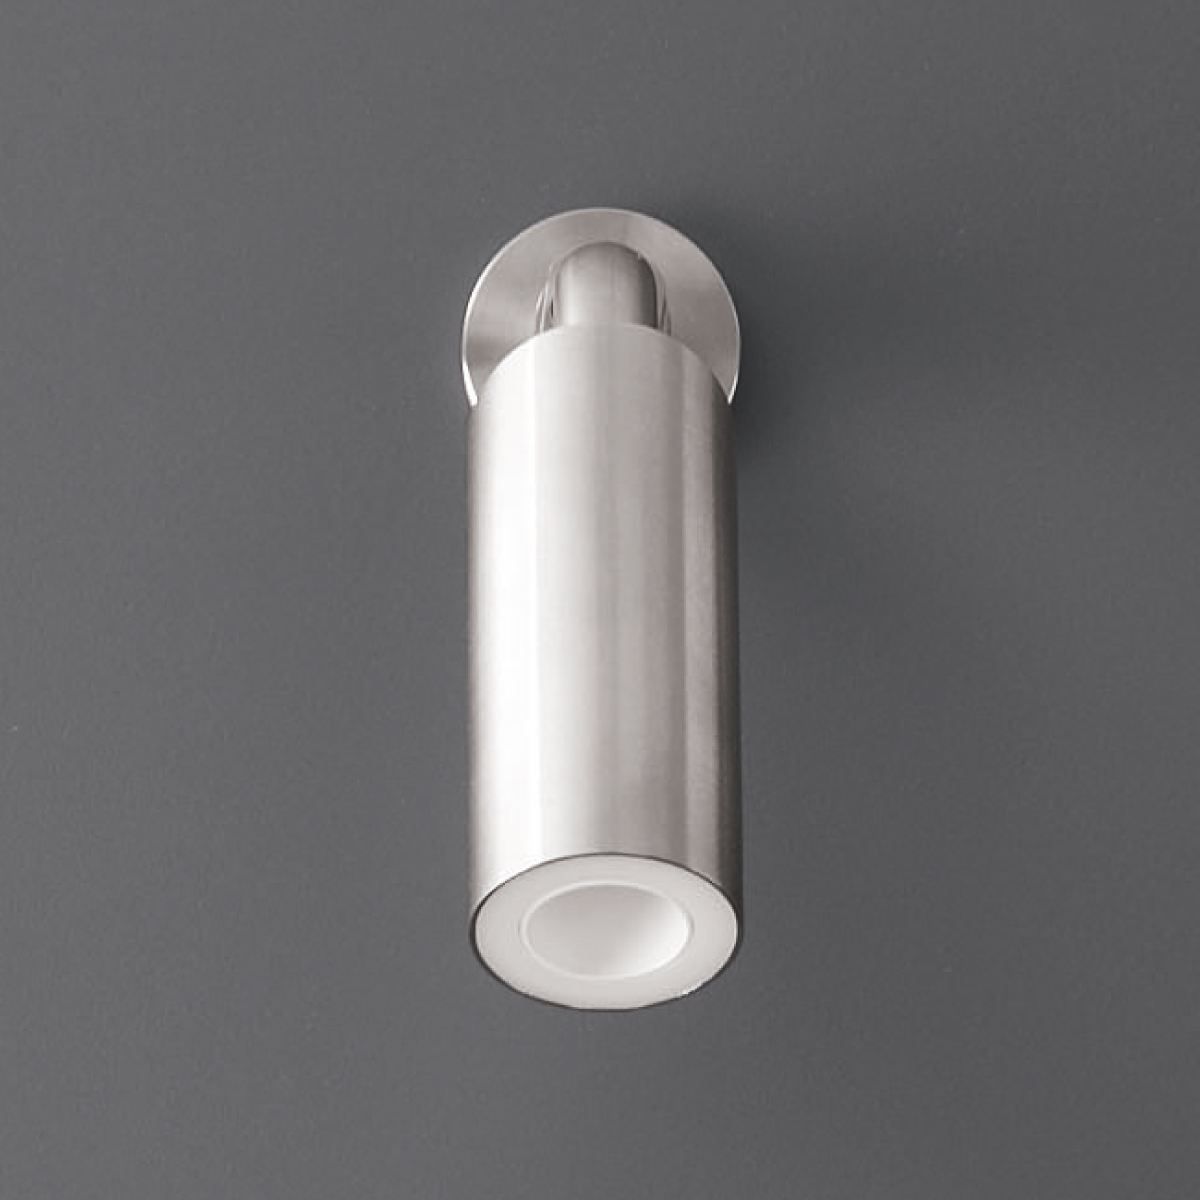 NEU 26  Soffione doccia orientabile in Acciaio  INOX    con estremità in Delrin® e getto aperto Nebulizzato       CEA Design               